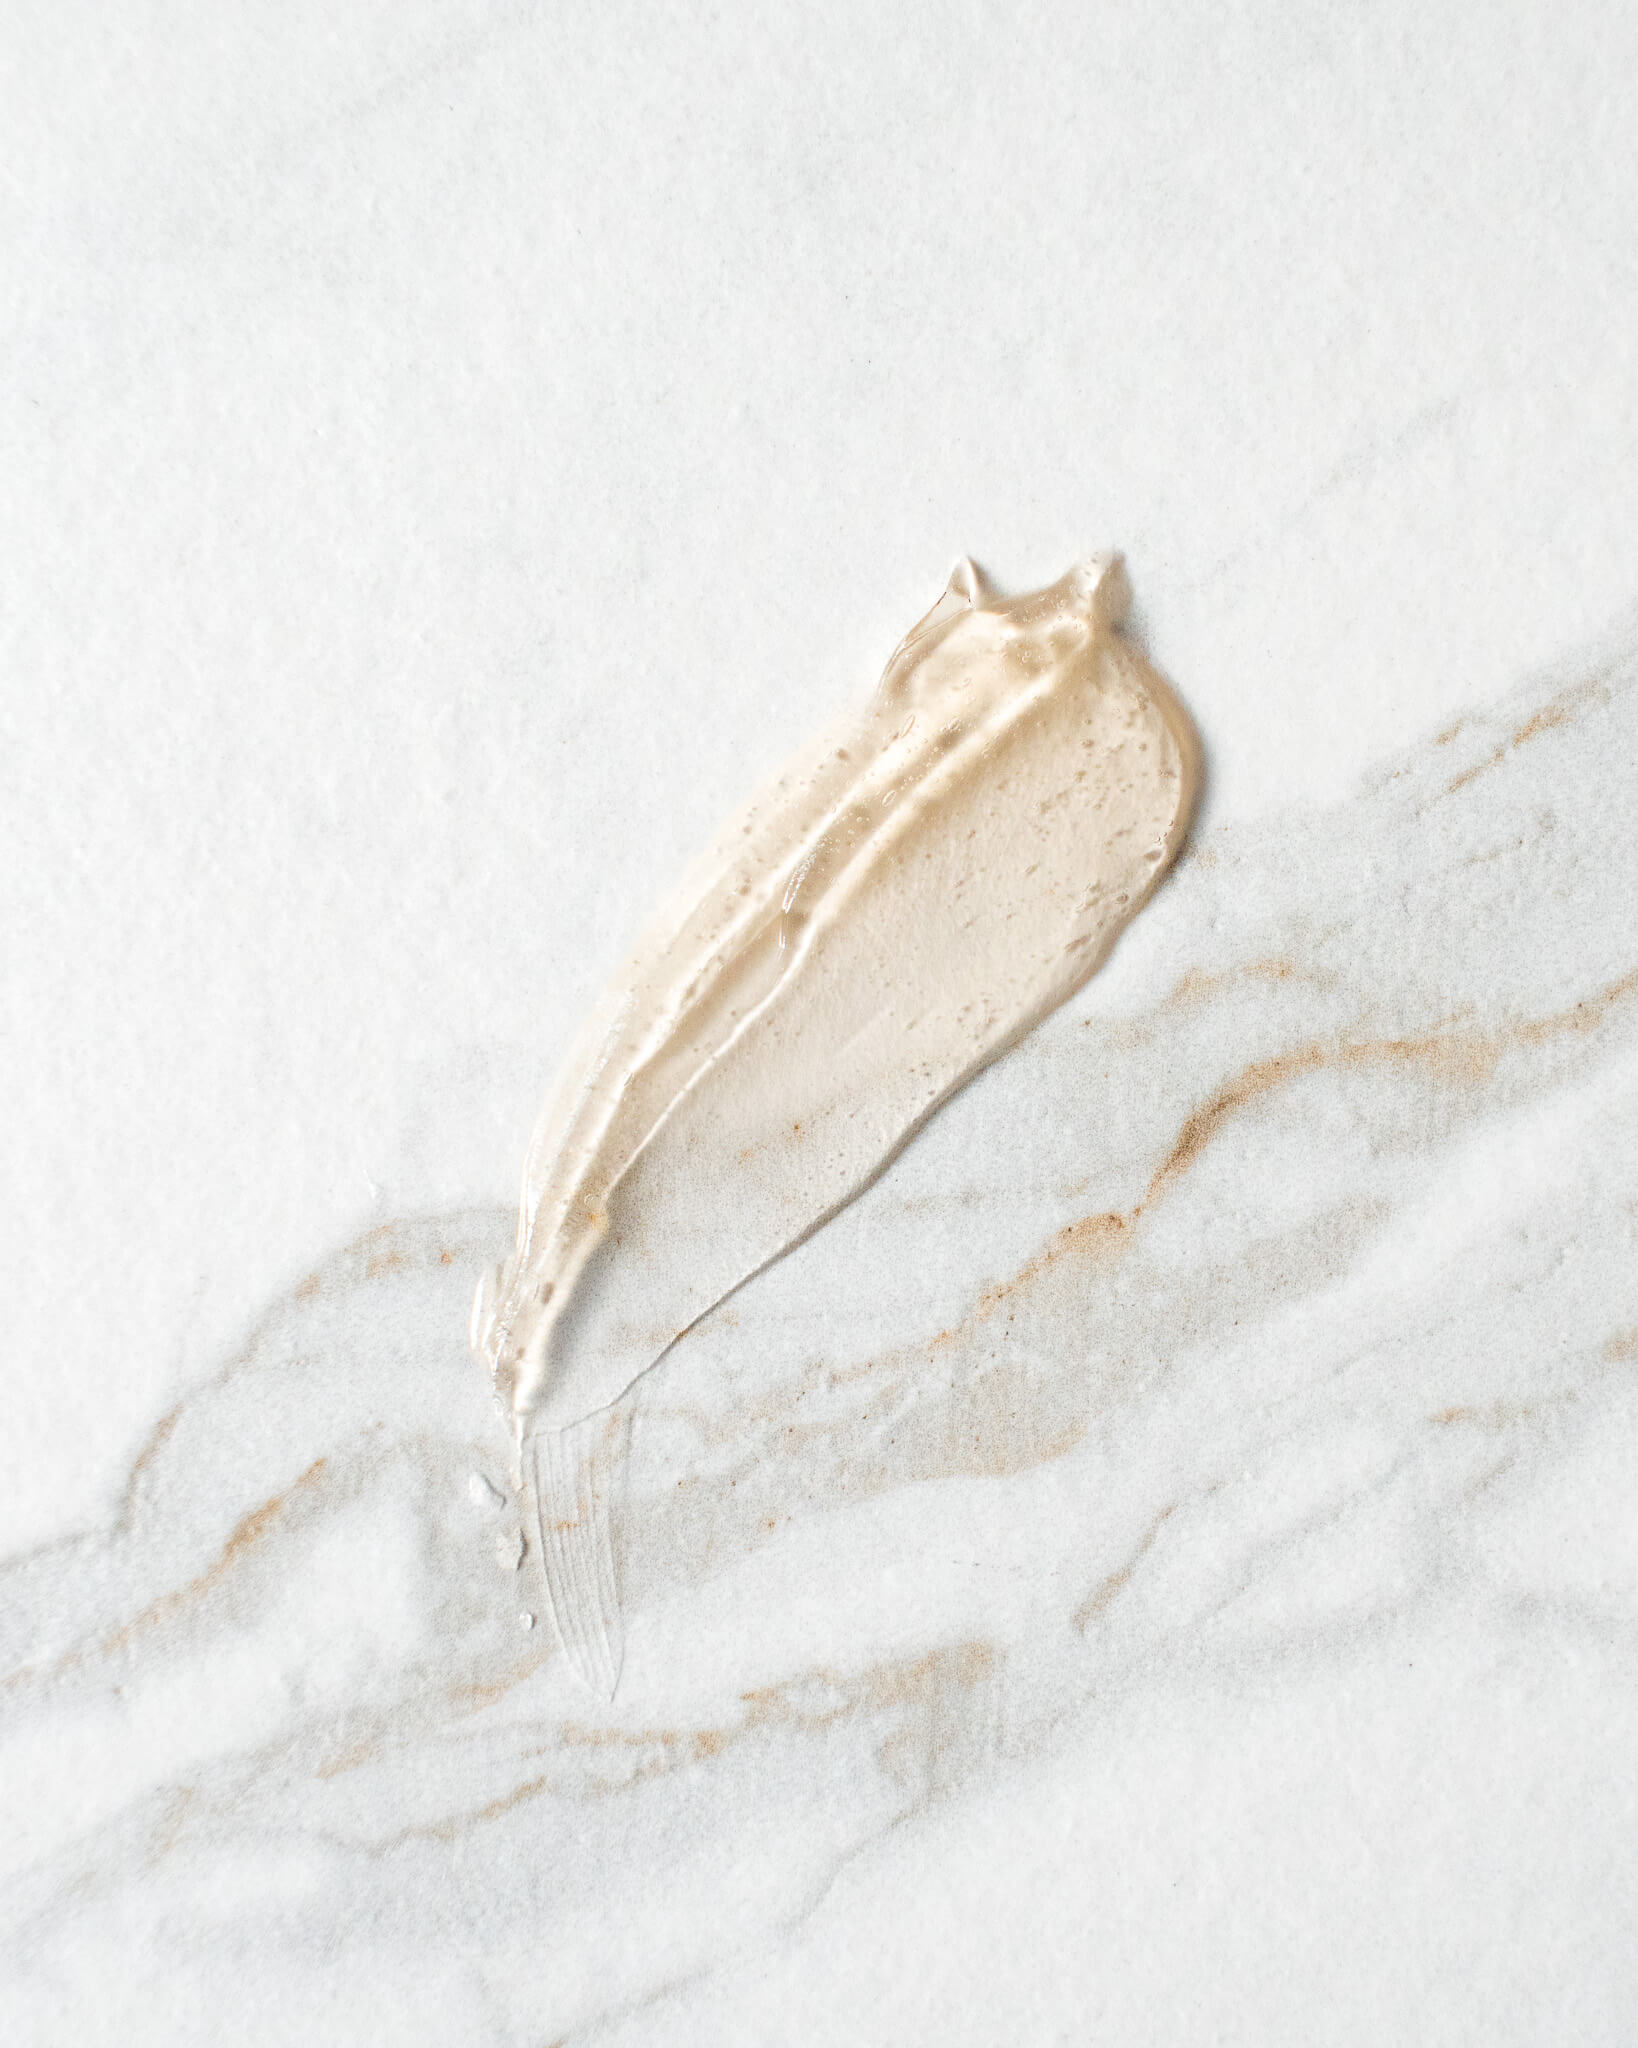 durchsichtiges Mallow Gel auf Marmor, um Textur zu zeigen